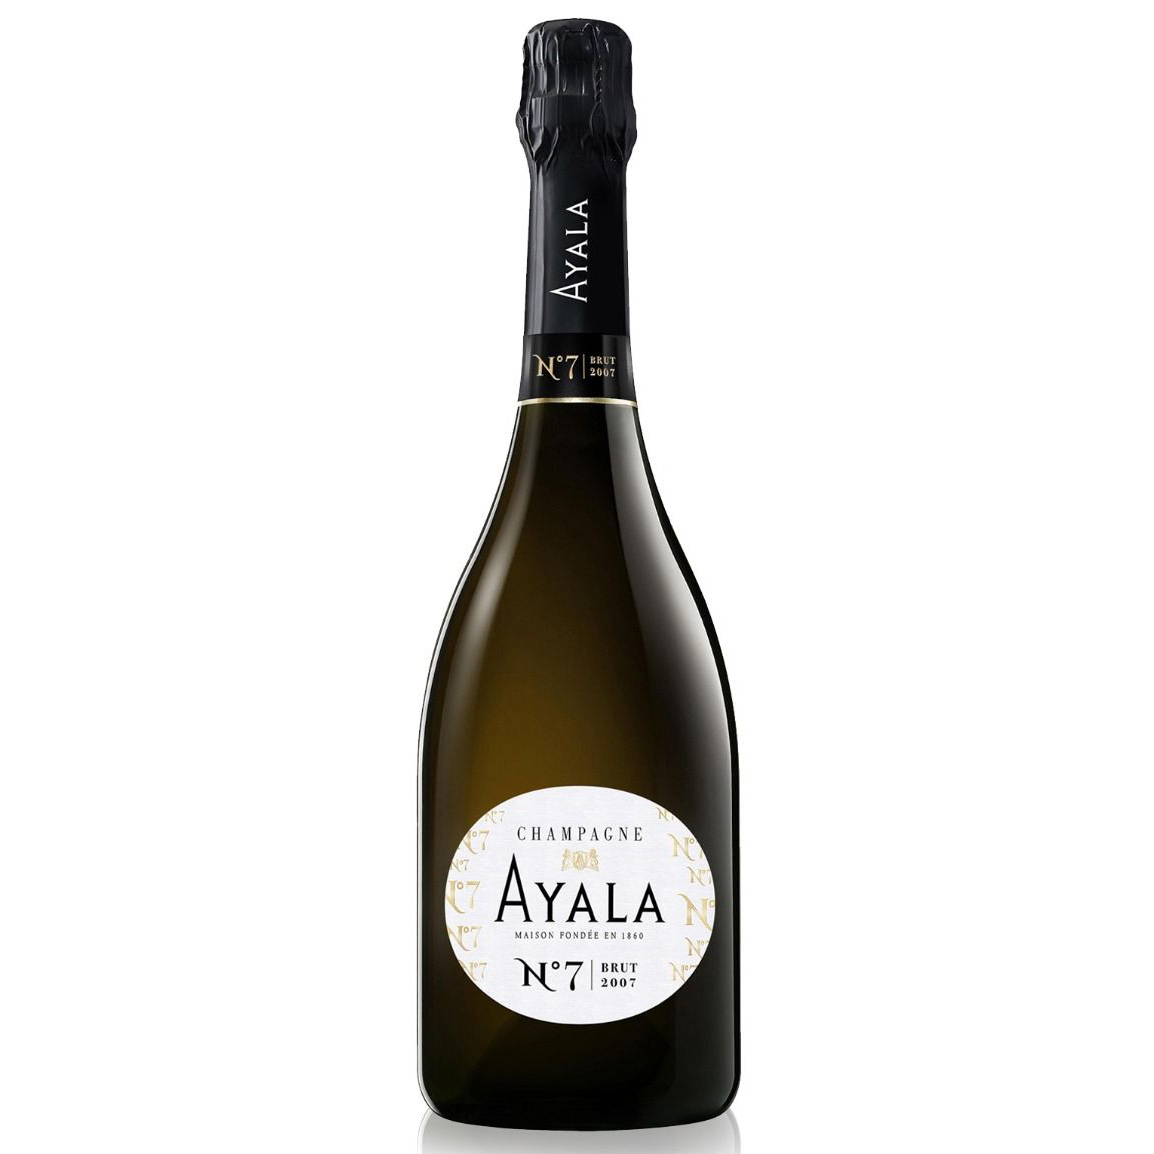 Ayala No.7 Brut Champagne 2007